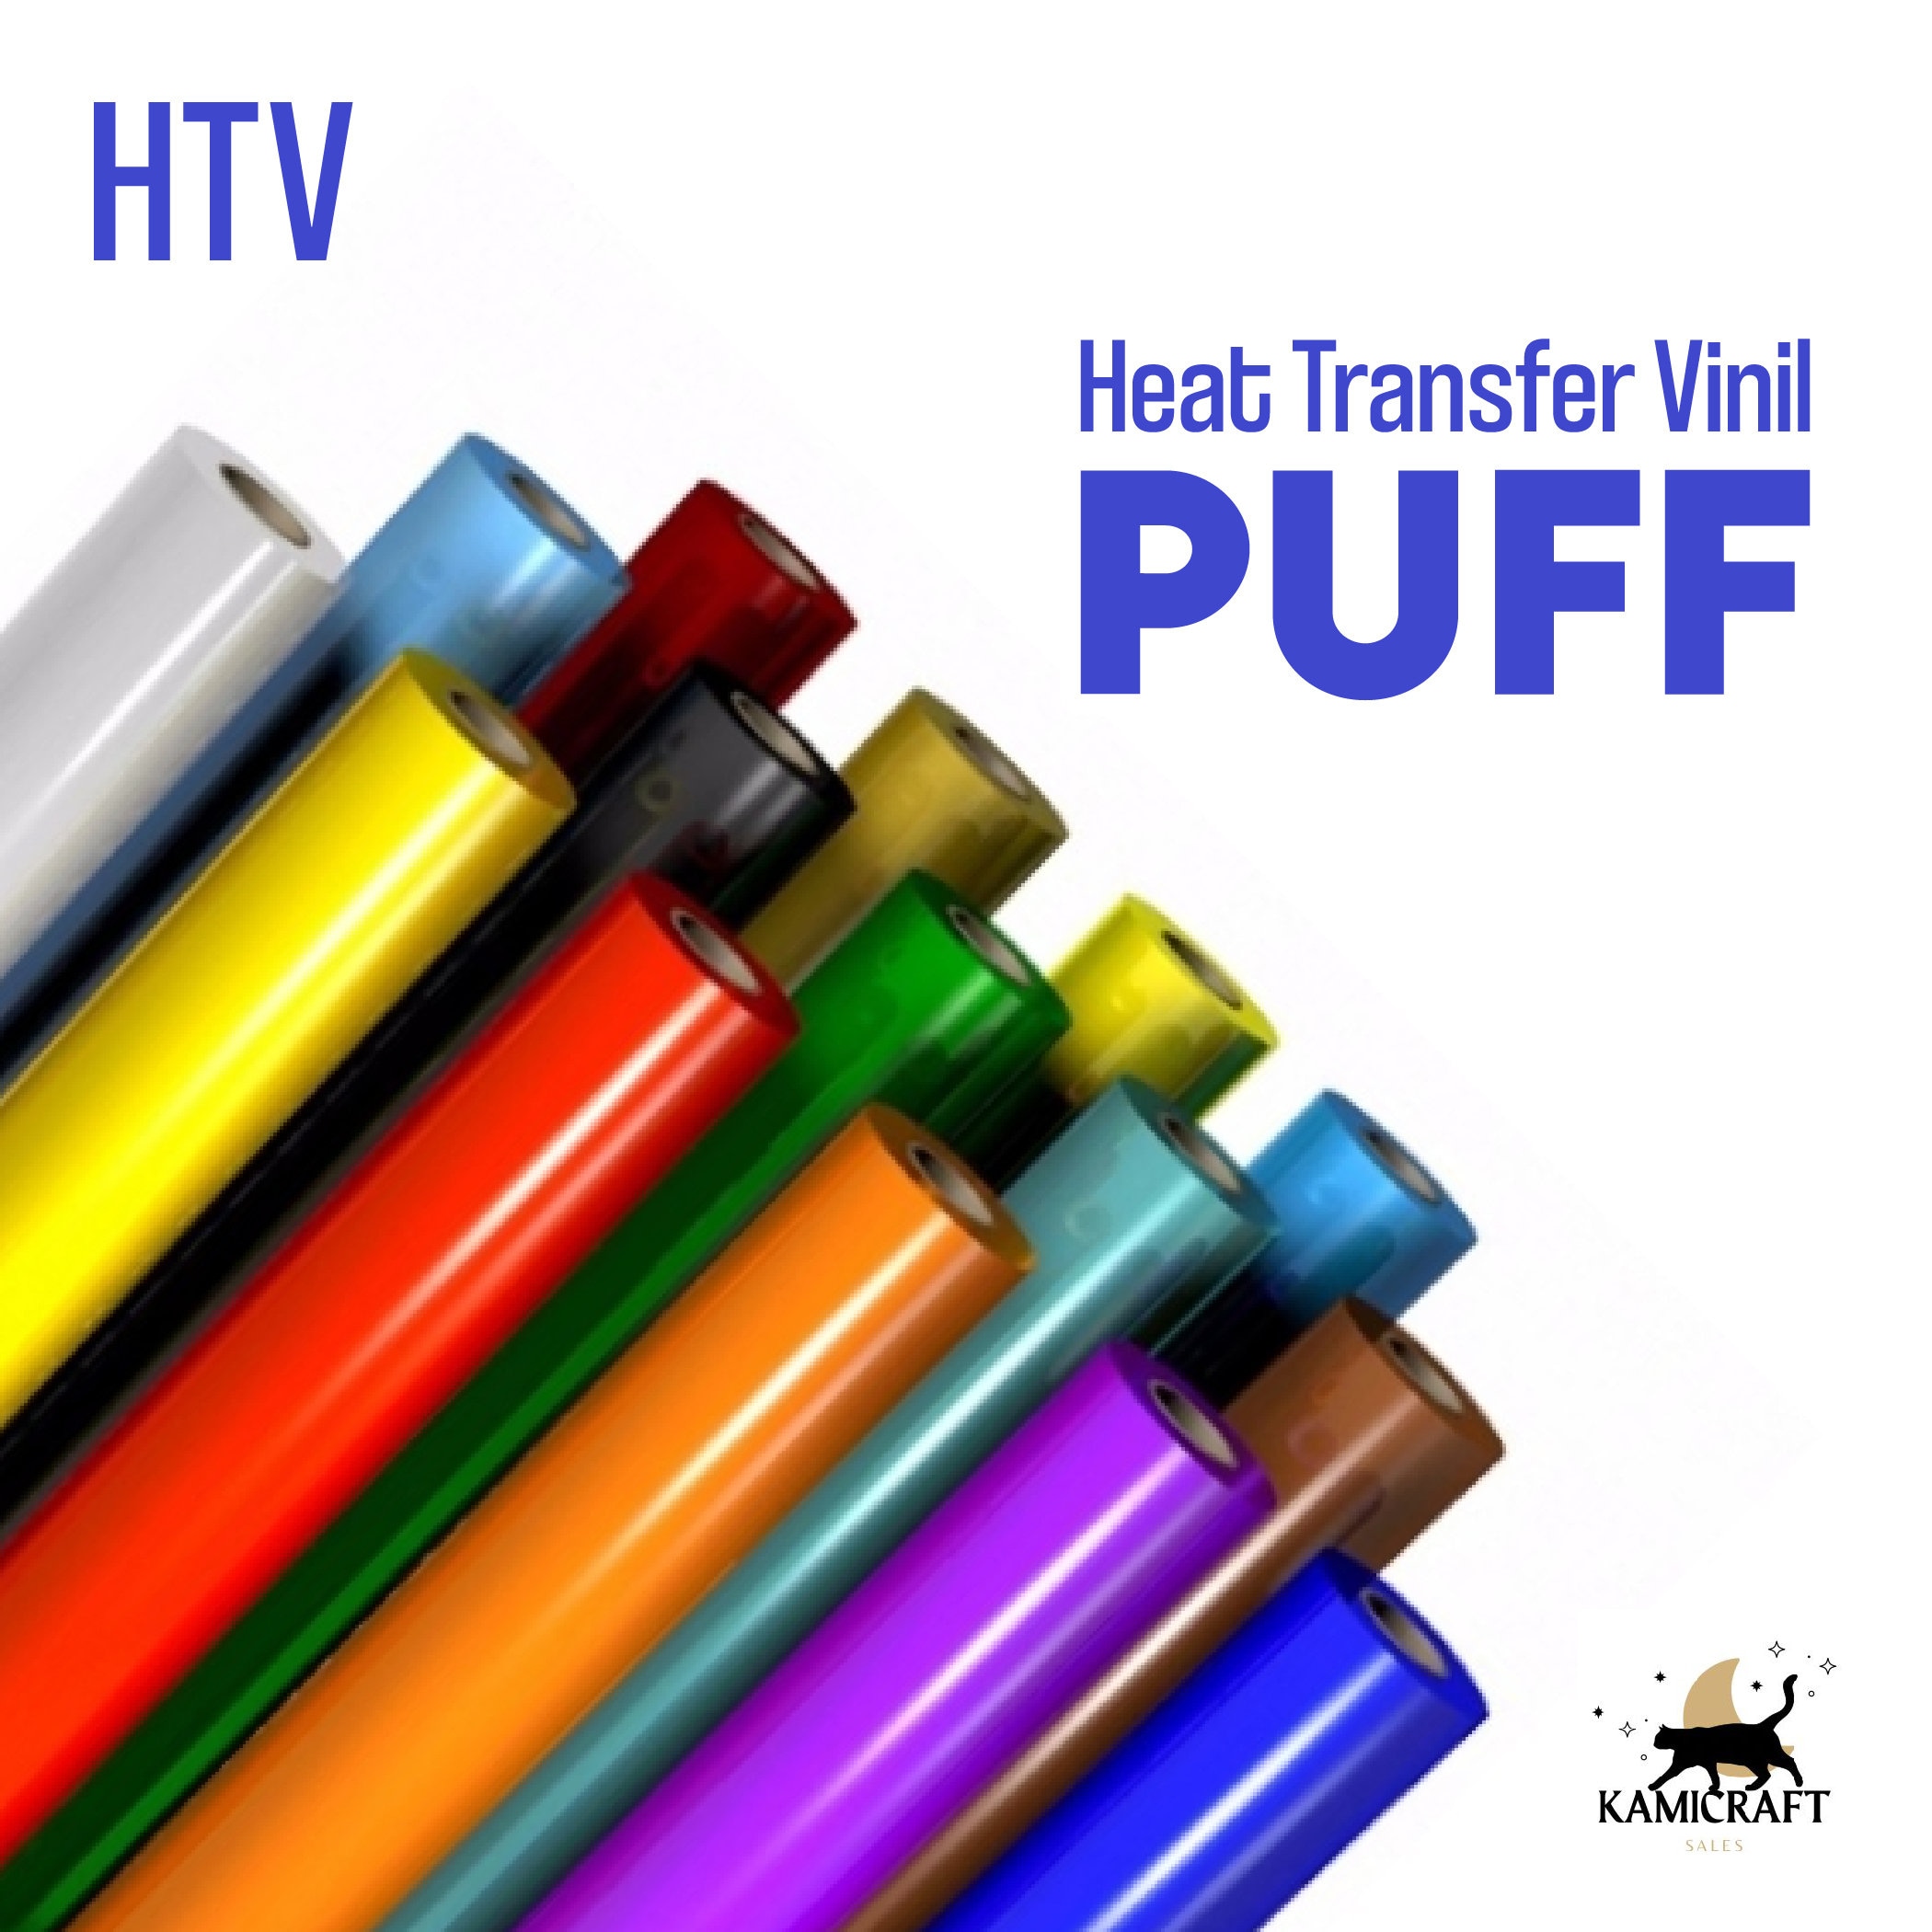 Mask for Heat Transfer Vinyl, Transfer Tape for Heat Transfer Vinyl, Htv Transfer  Tape 